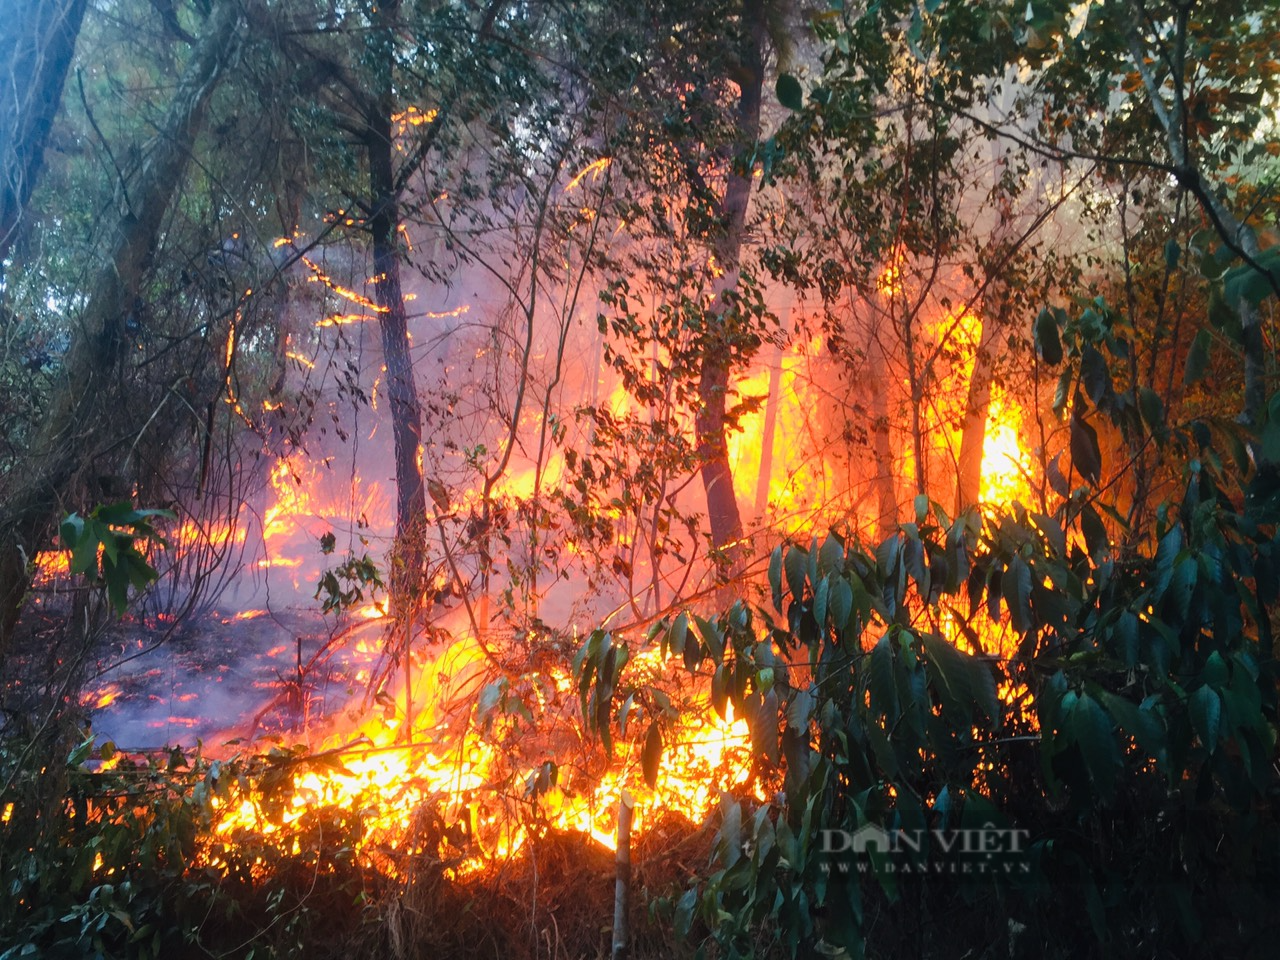 Liên tục xảy ra cháy rừng, Bộ NNPTNT chỉ đạo sẵn sàng ứng phó, xử lý tình huống cấp bách  - Ảnh 1.